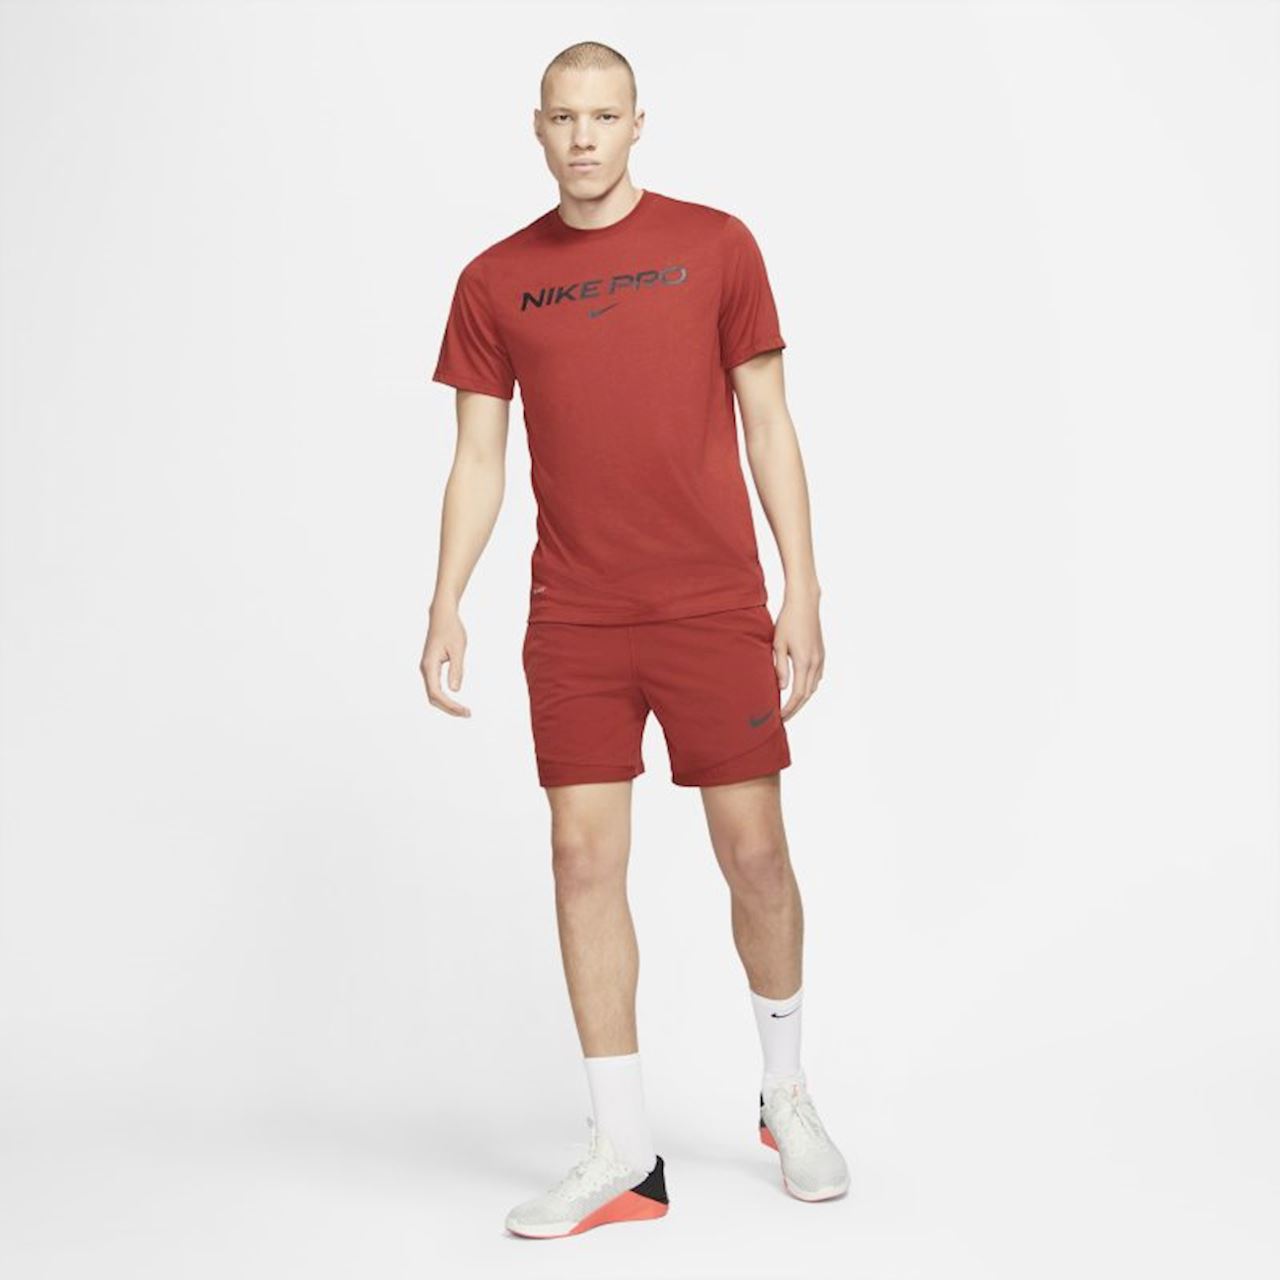 Nike Pro Erkek Kırmızı Tişört (DA1587-689)